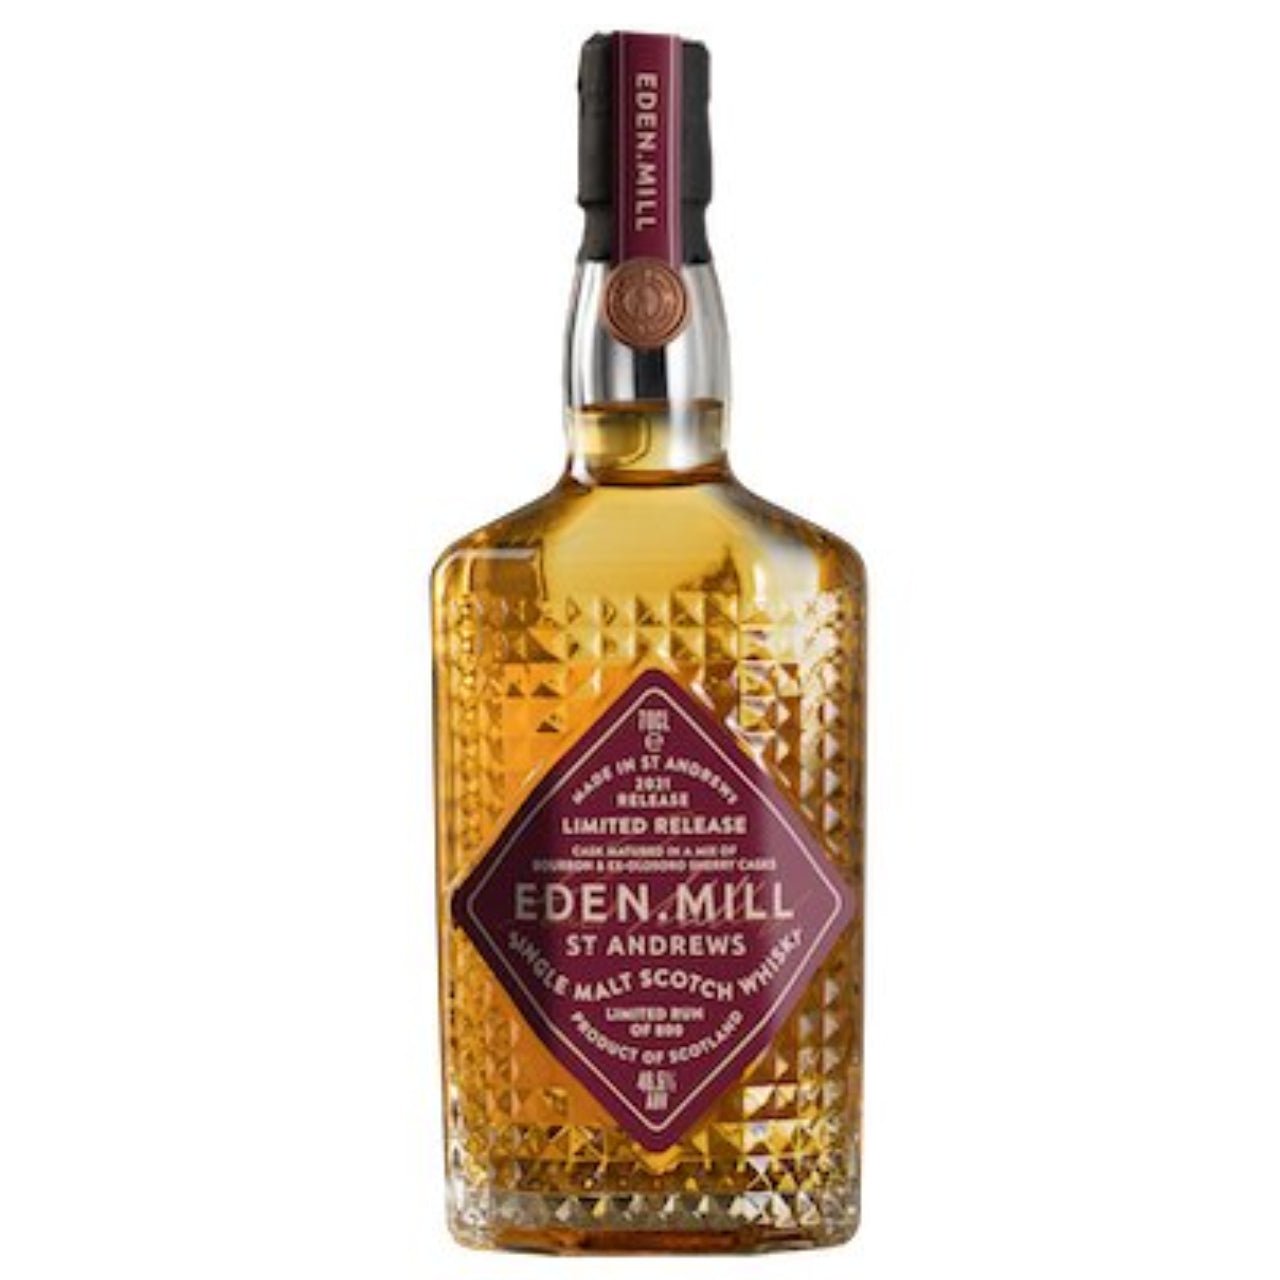 Eden Mill Single Malt Whisky 2021 700ml - Whisky > Single Malt, Whisky - Liquor Wine Cave